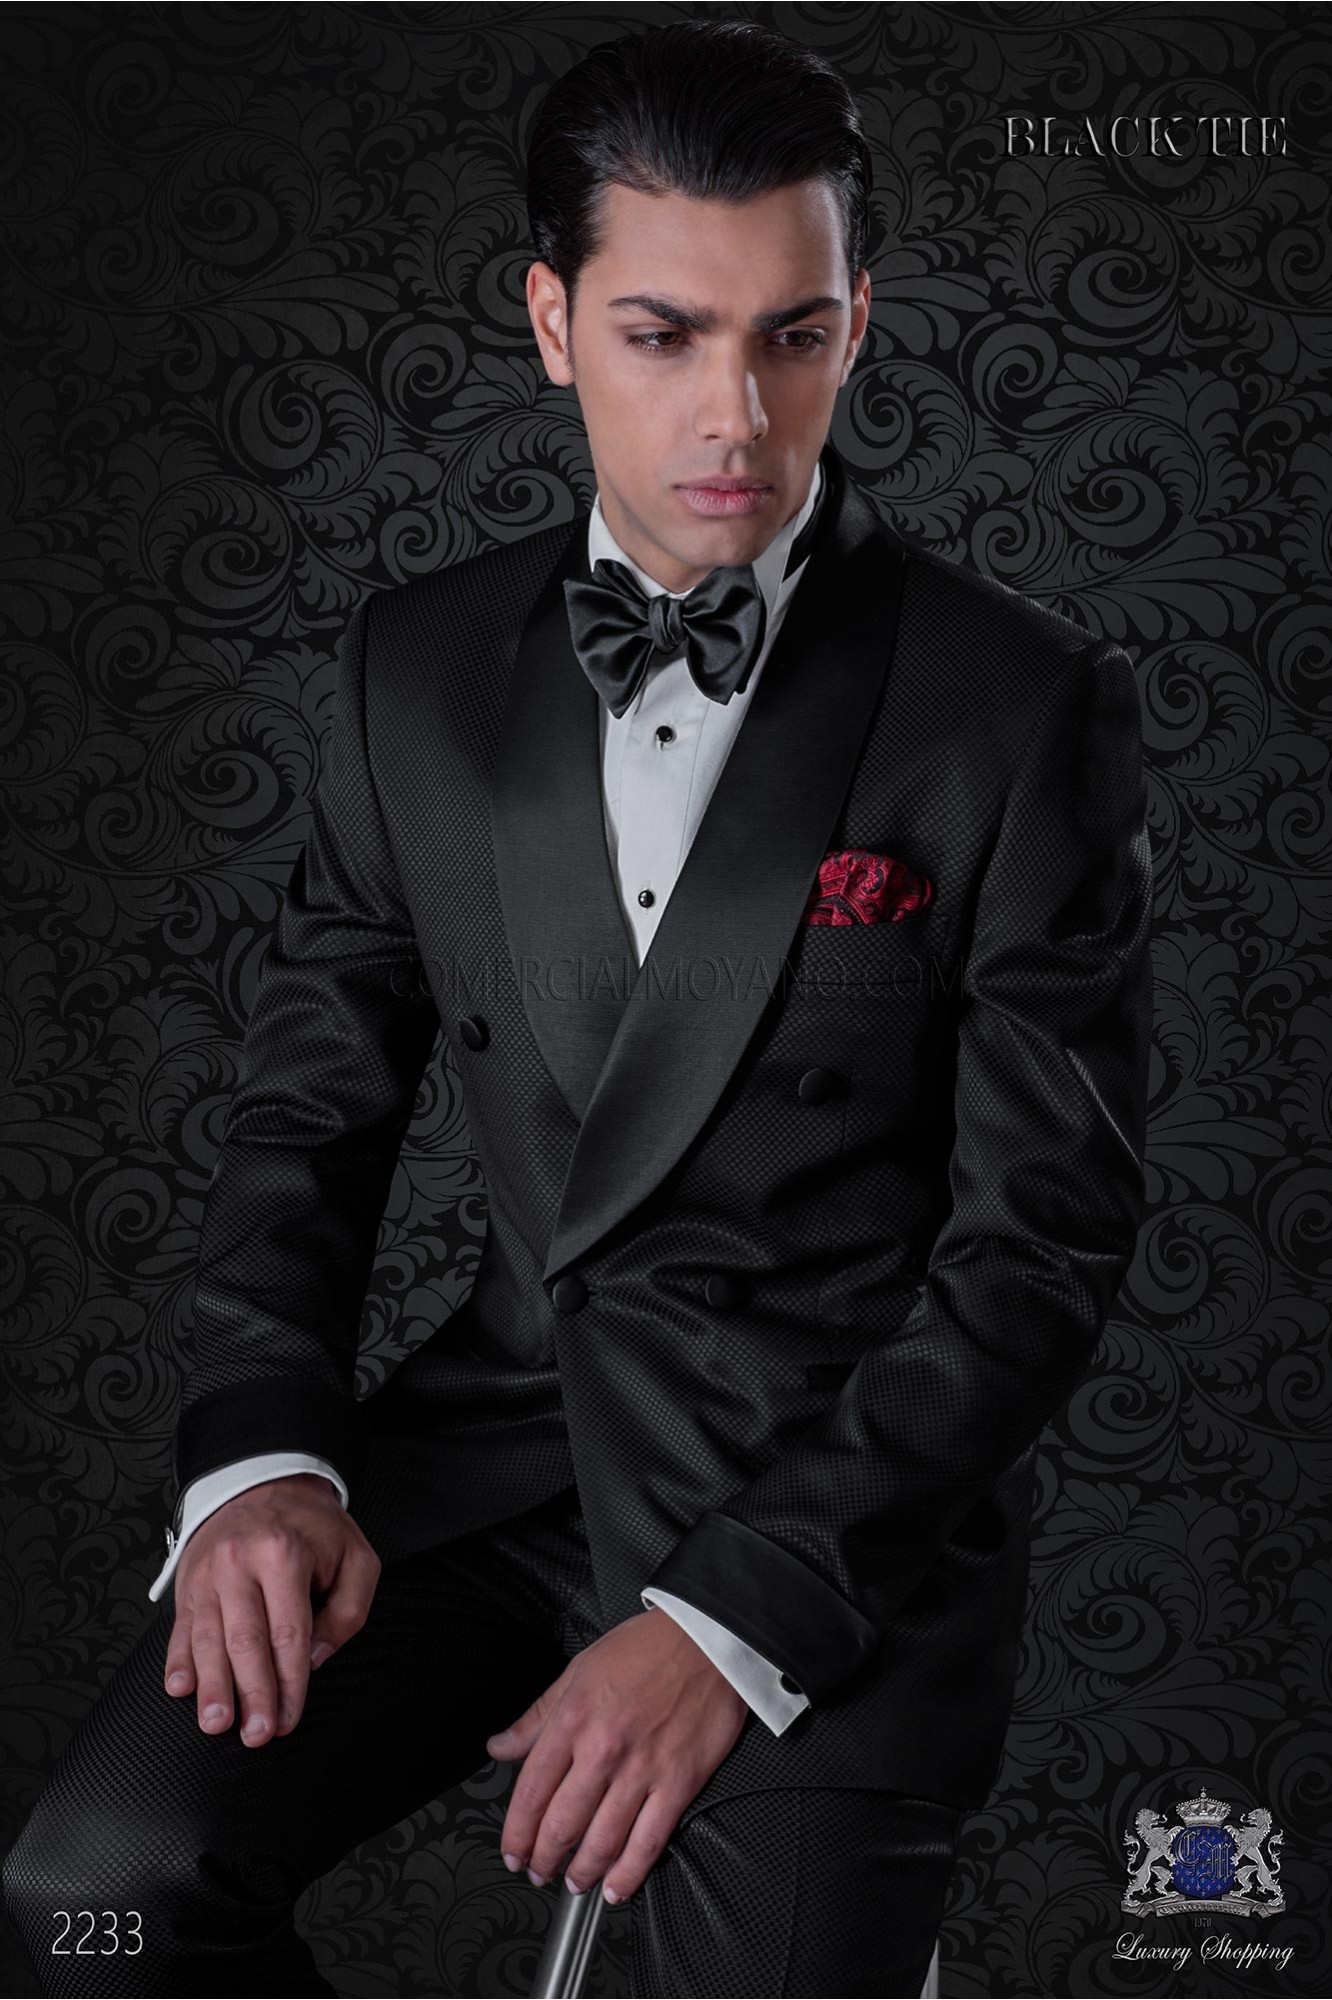 Esmoquin italiano cruzado negro con solapa chal en tejido mixto lana modelo: 2233 Mario Moyano colección Black Tie